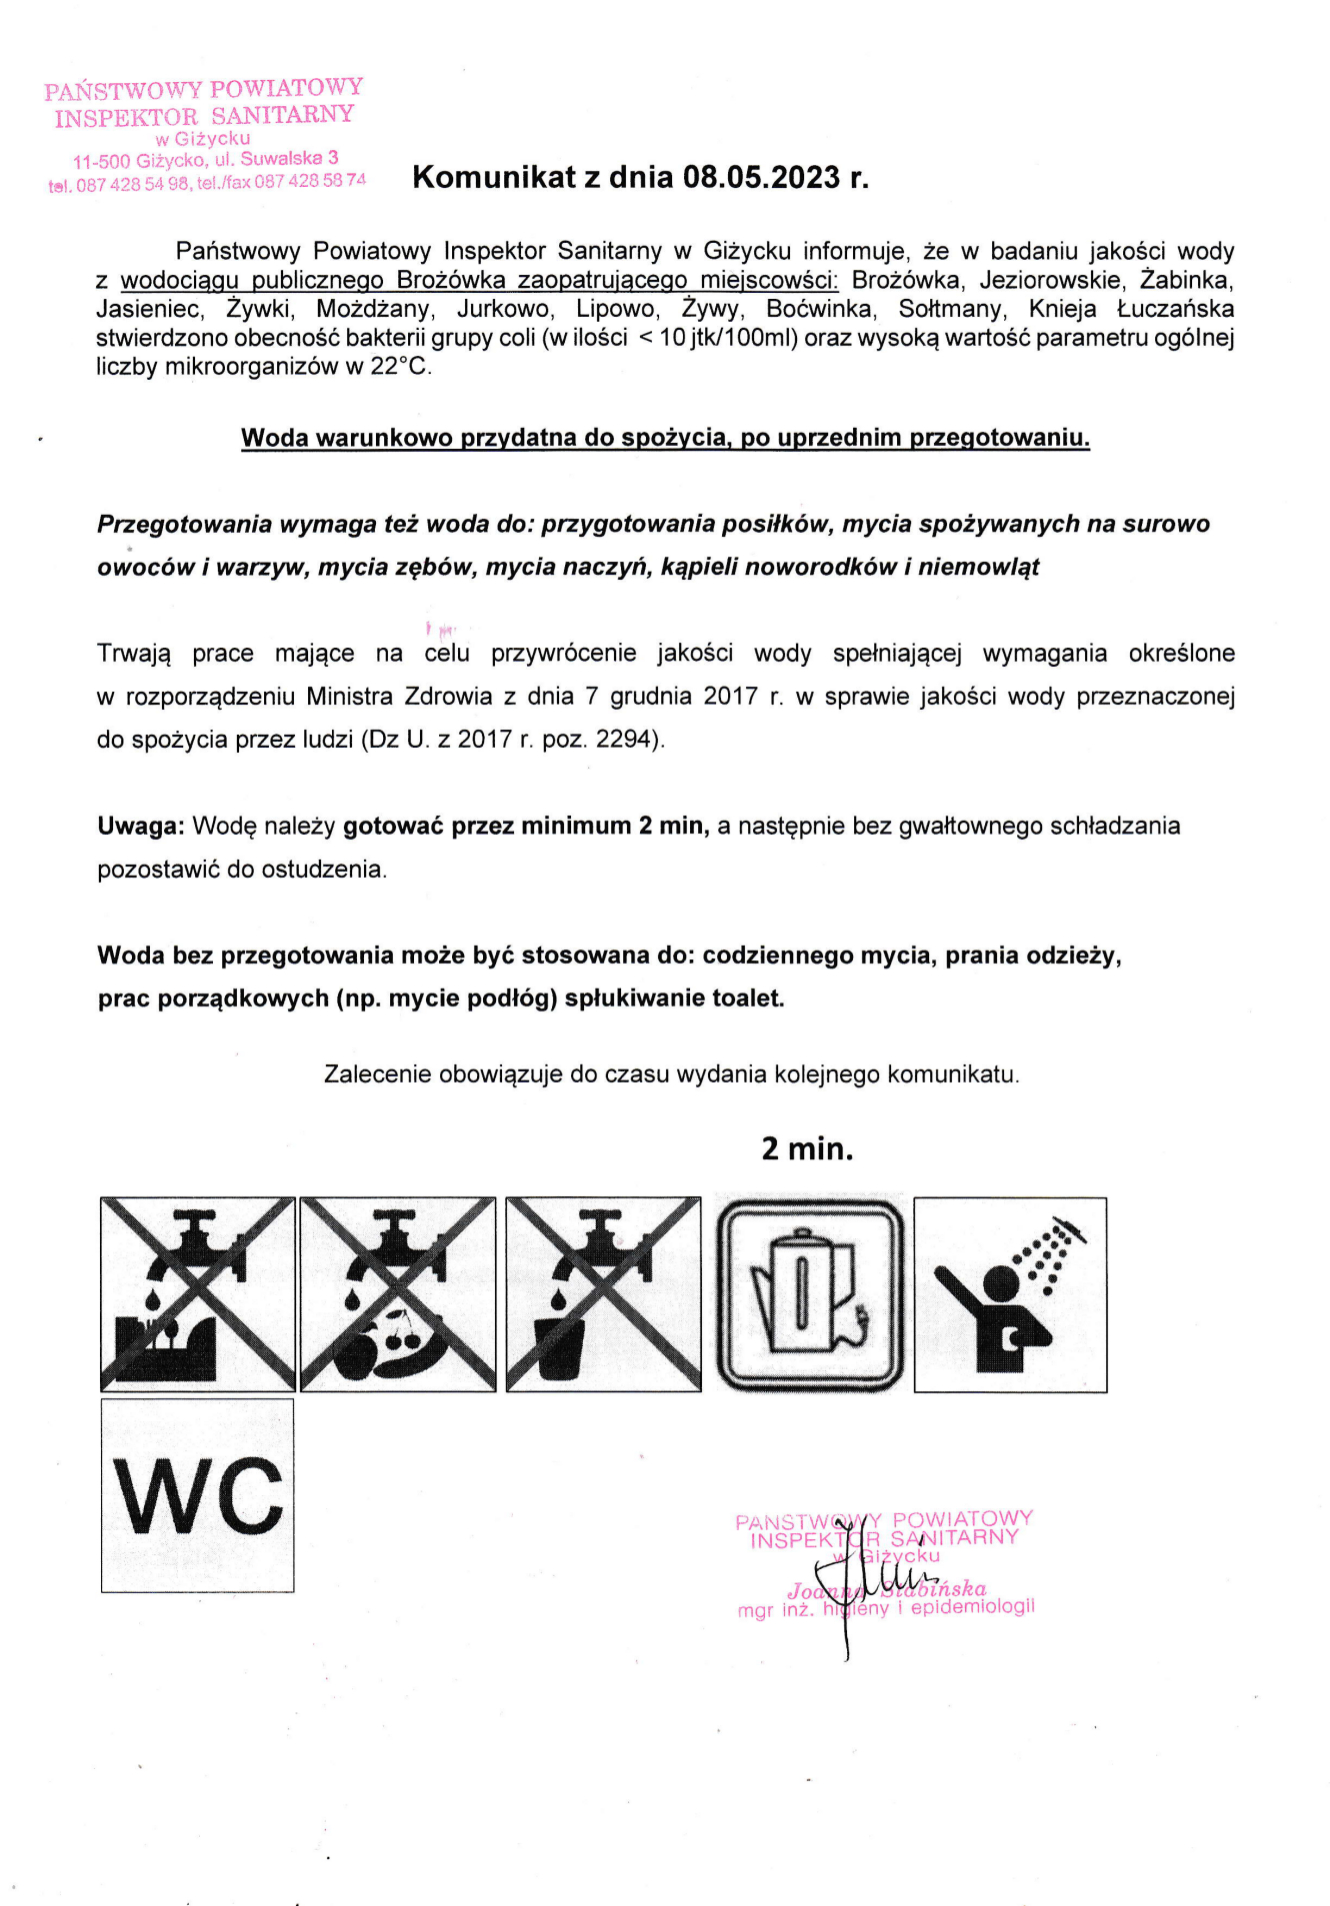 Komunikat z dnia 08.05.2023 r. (dot. wodociągu publicznego Brożówka)